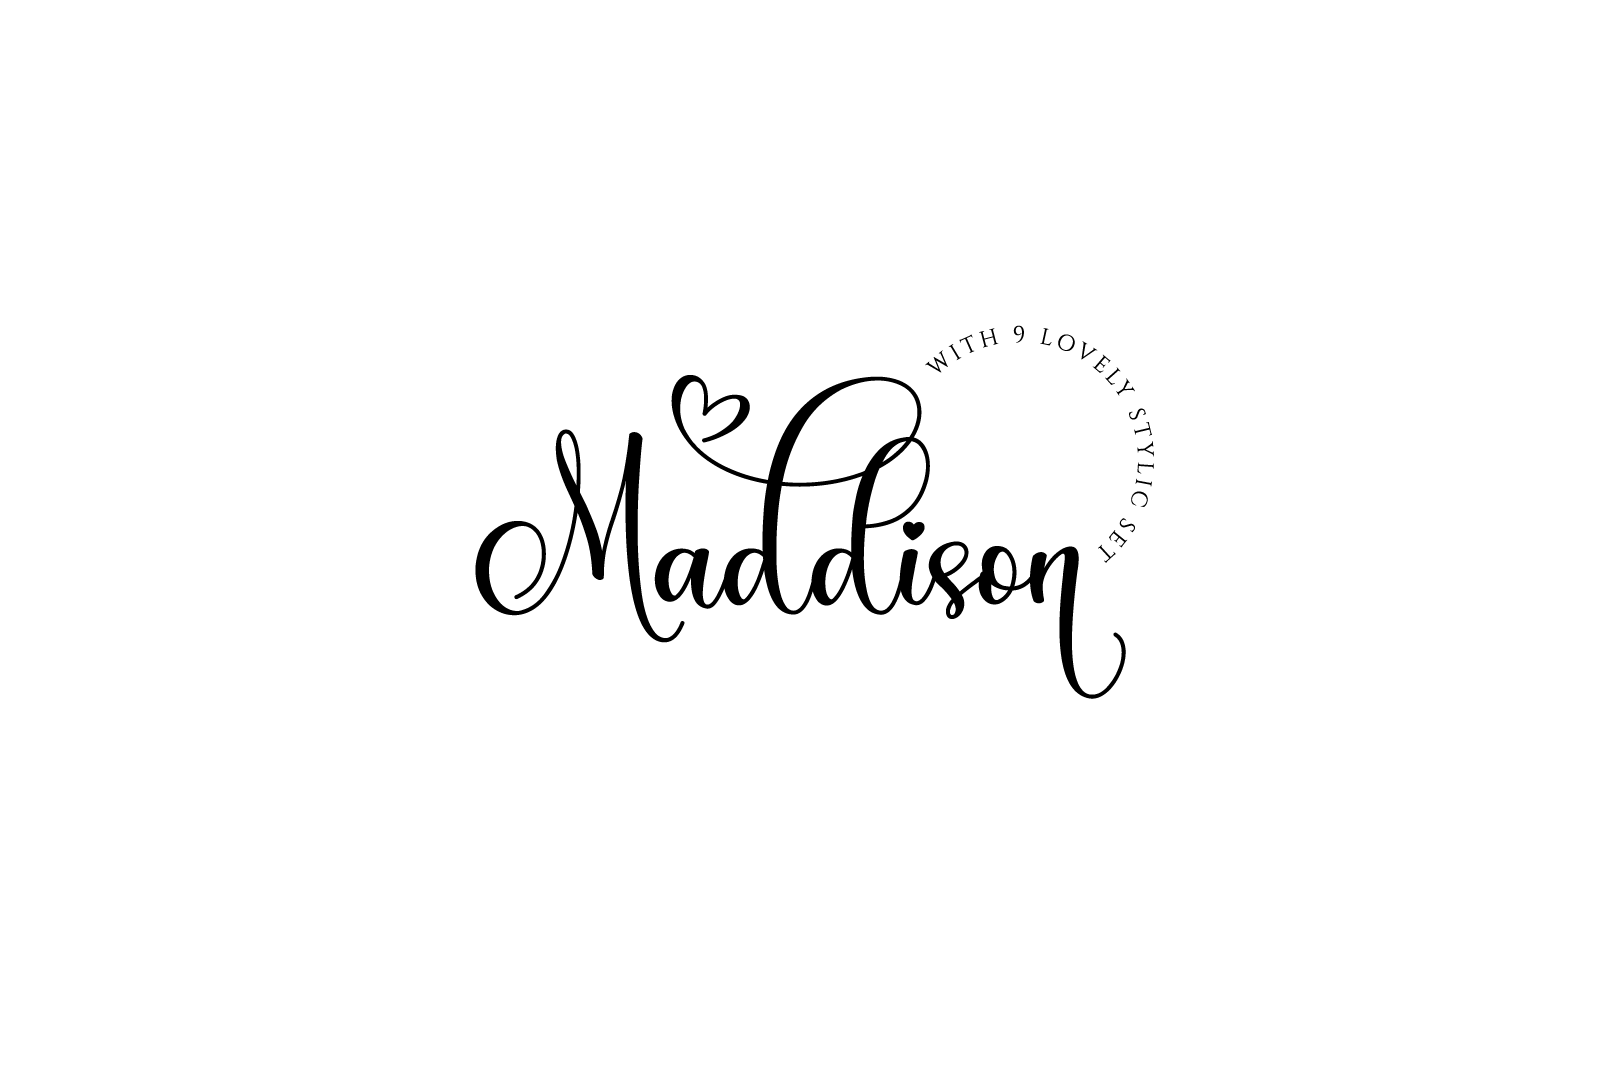 MADDISONN : Creative Logo Design creative logo design graphic design logo maddison logo